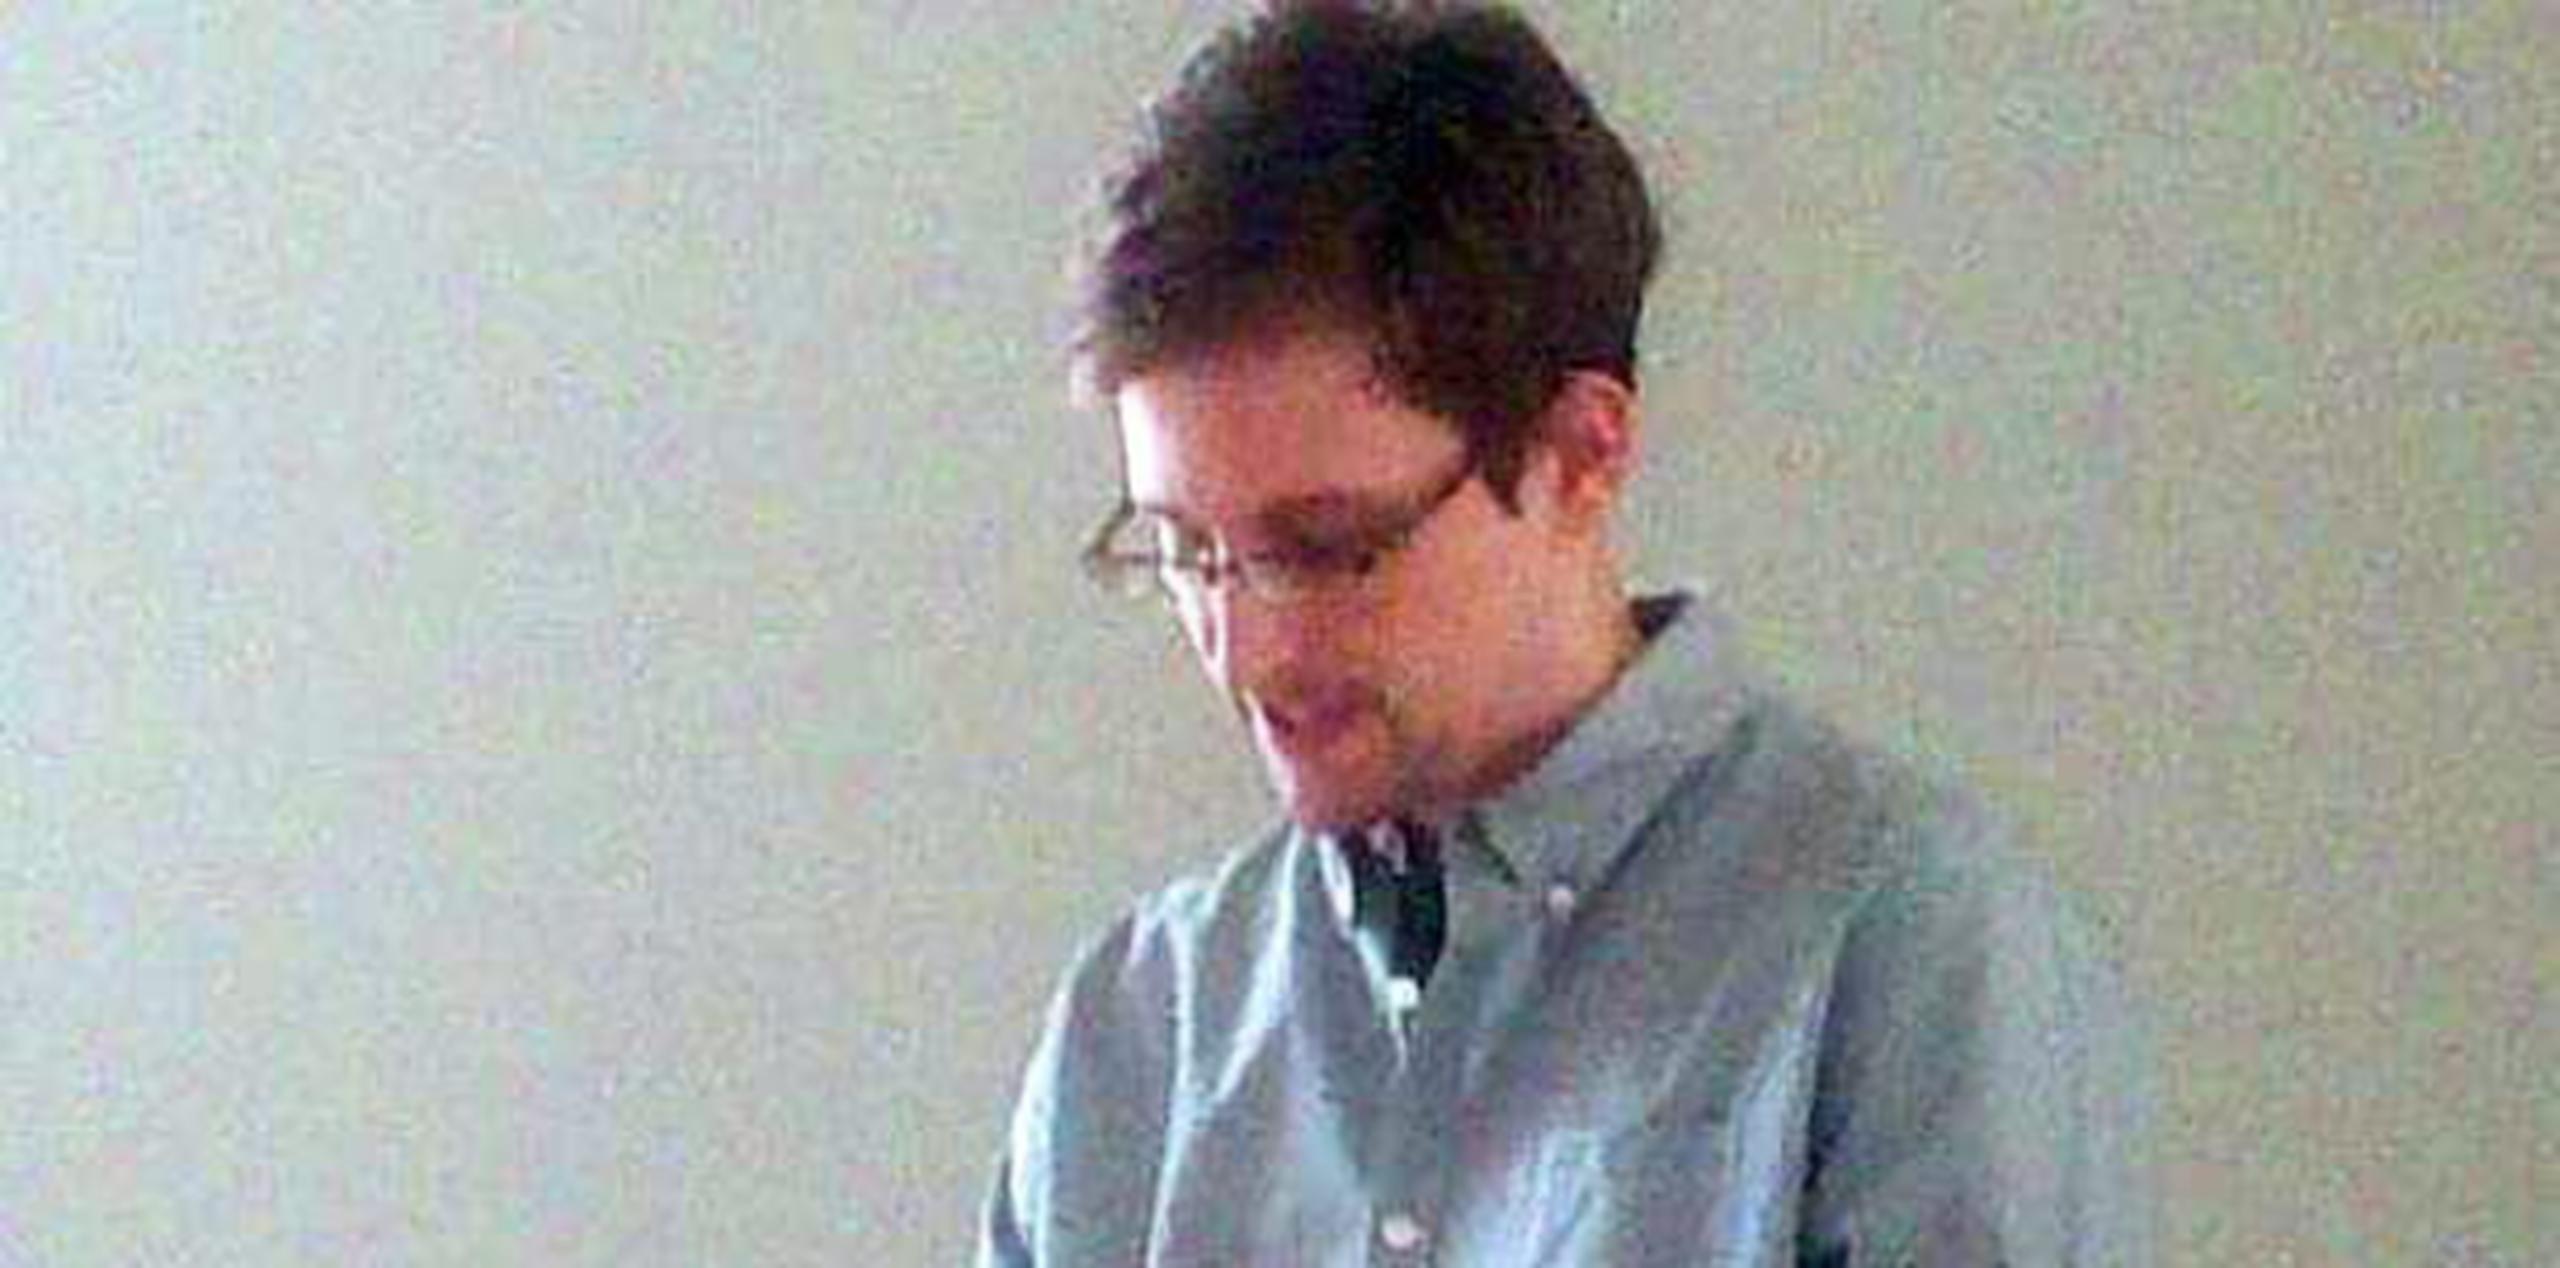 Sobre la personalidad de Snowden, el abogado dijo que no ha visto "nada inadecuado en su conducta".(Archivo)